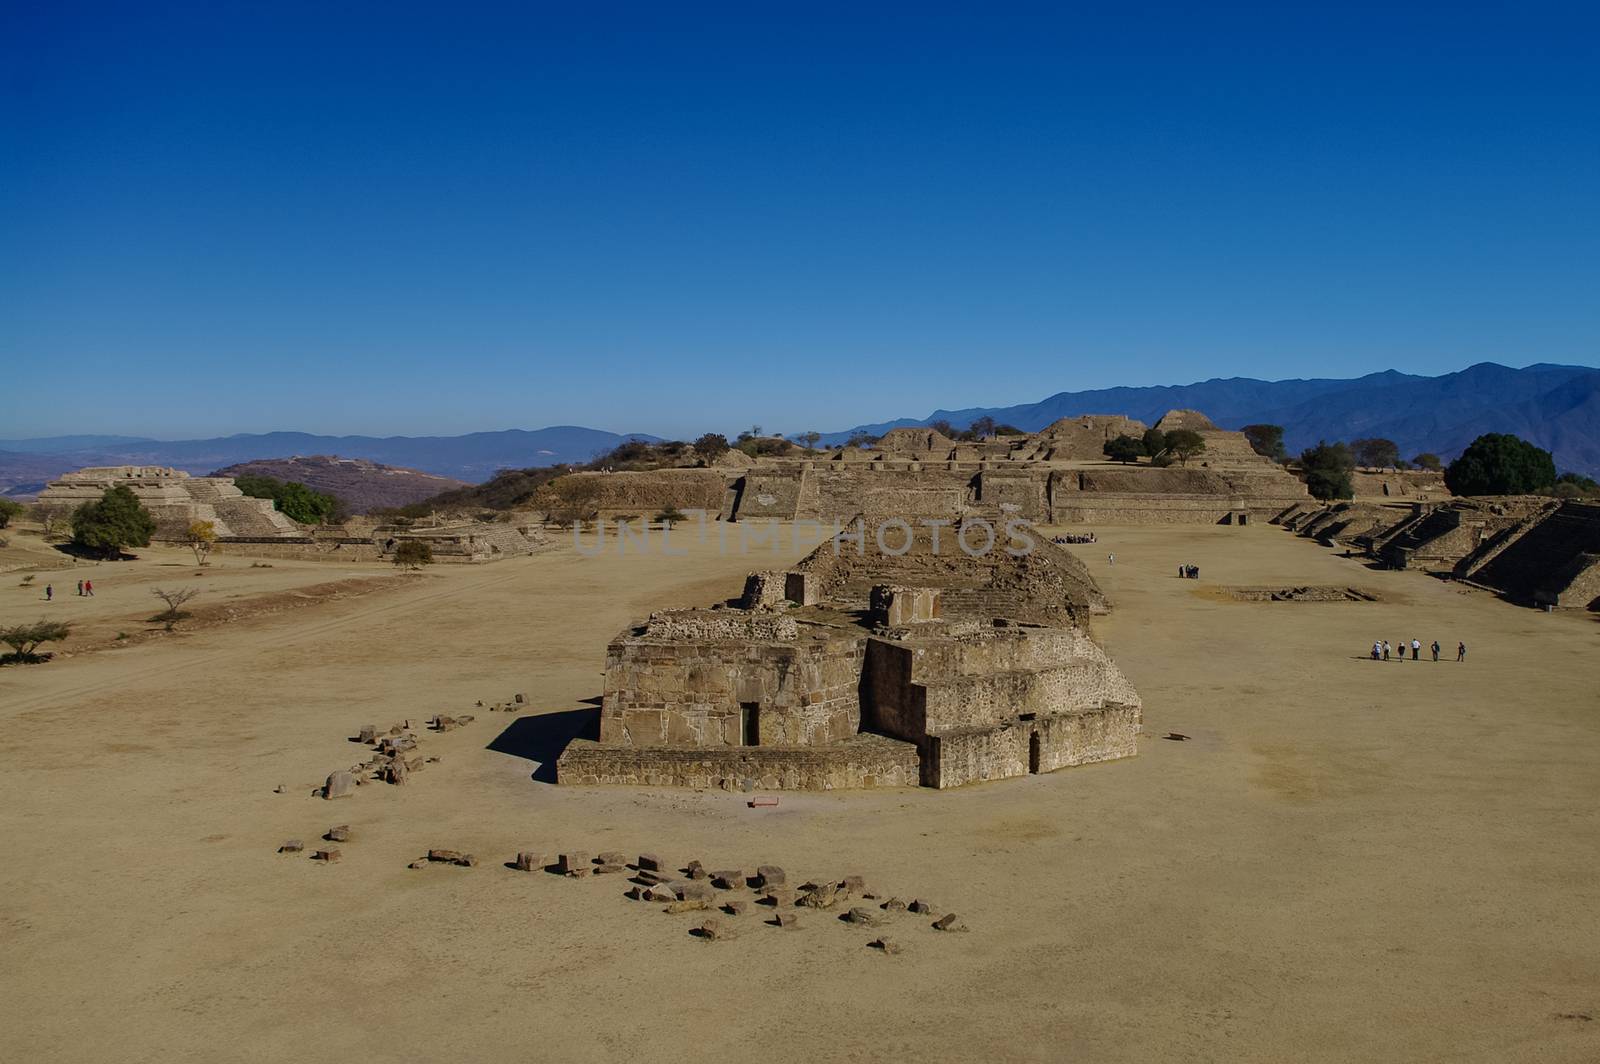 Monte Alban - the ruins of the Zapotec civilization in Oaxaca, Mexico